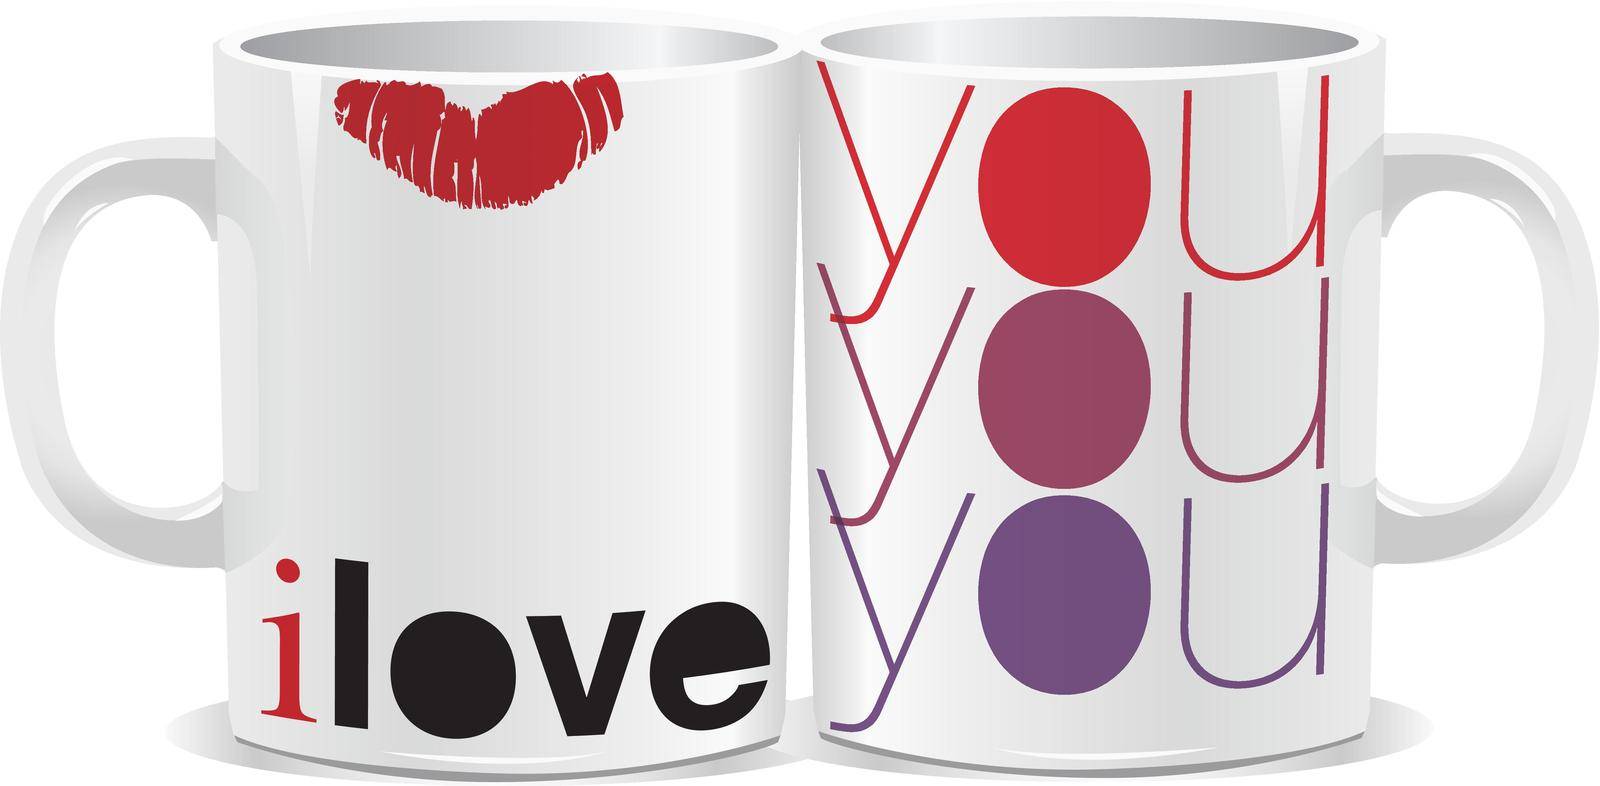 I love you mug by aroas